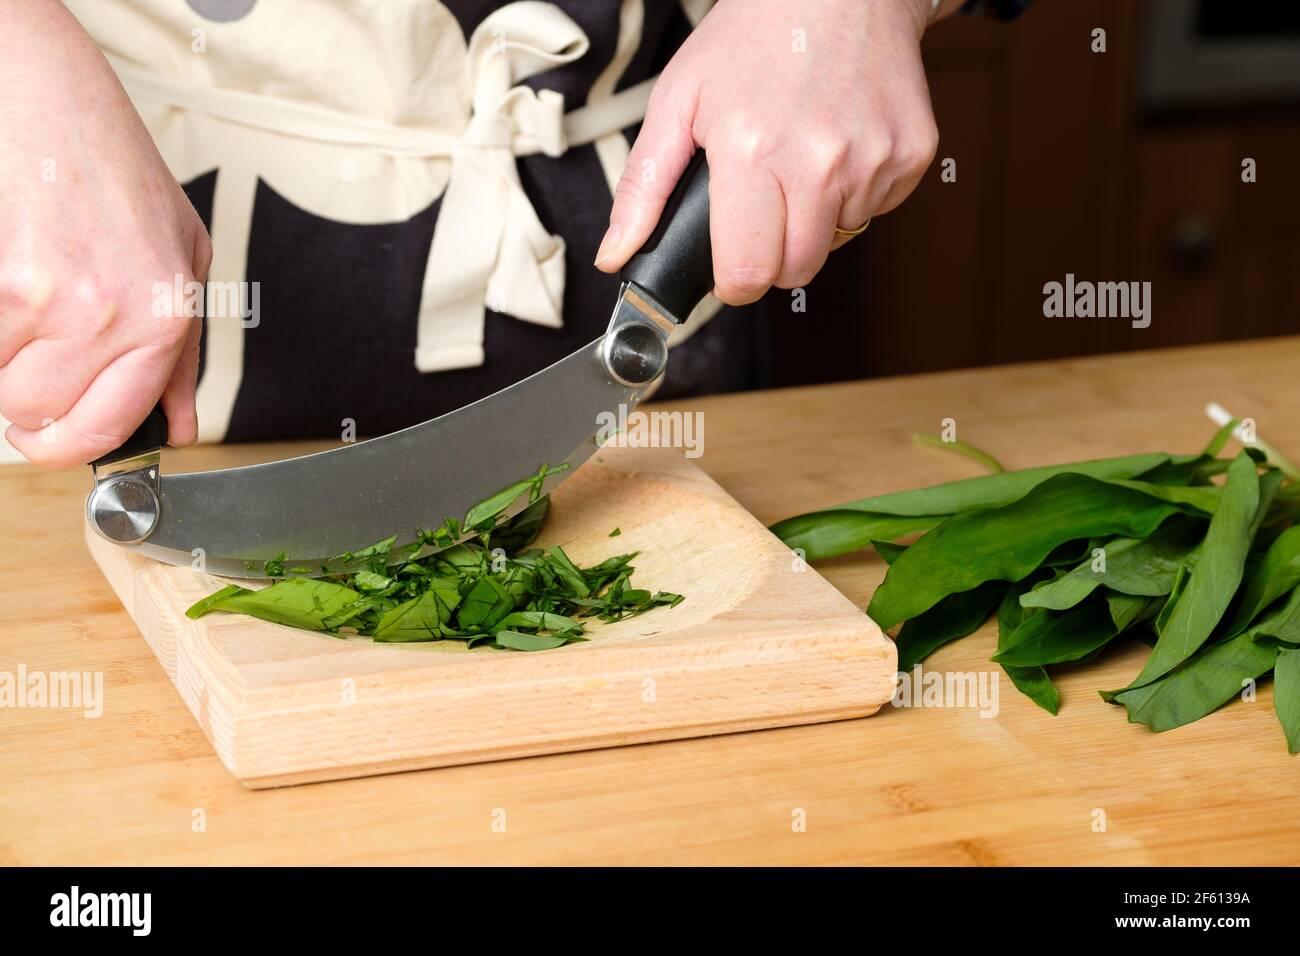 Une cuisine à l'aide d'une découpeuse et d'une planche à découper Hachoir ou Ha pour faire cuire les feuilles d'ail sauvage fraîchement cueillies, les rançons ou l'Allium ursinum Banque D'Images